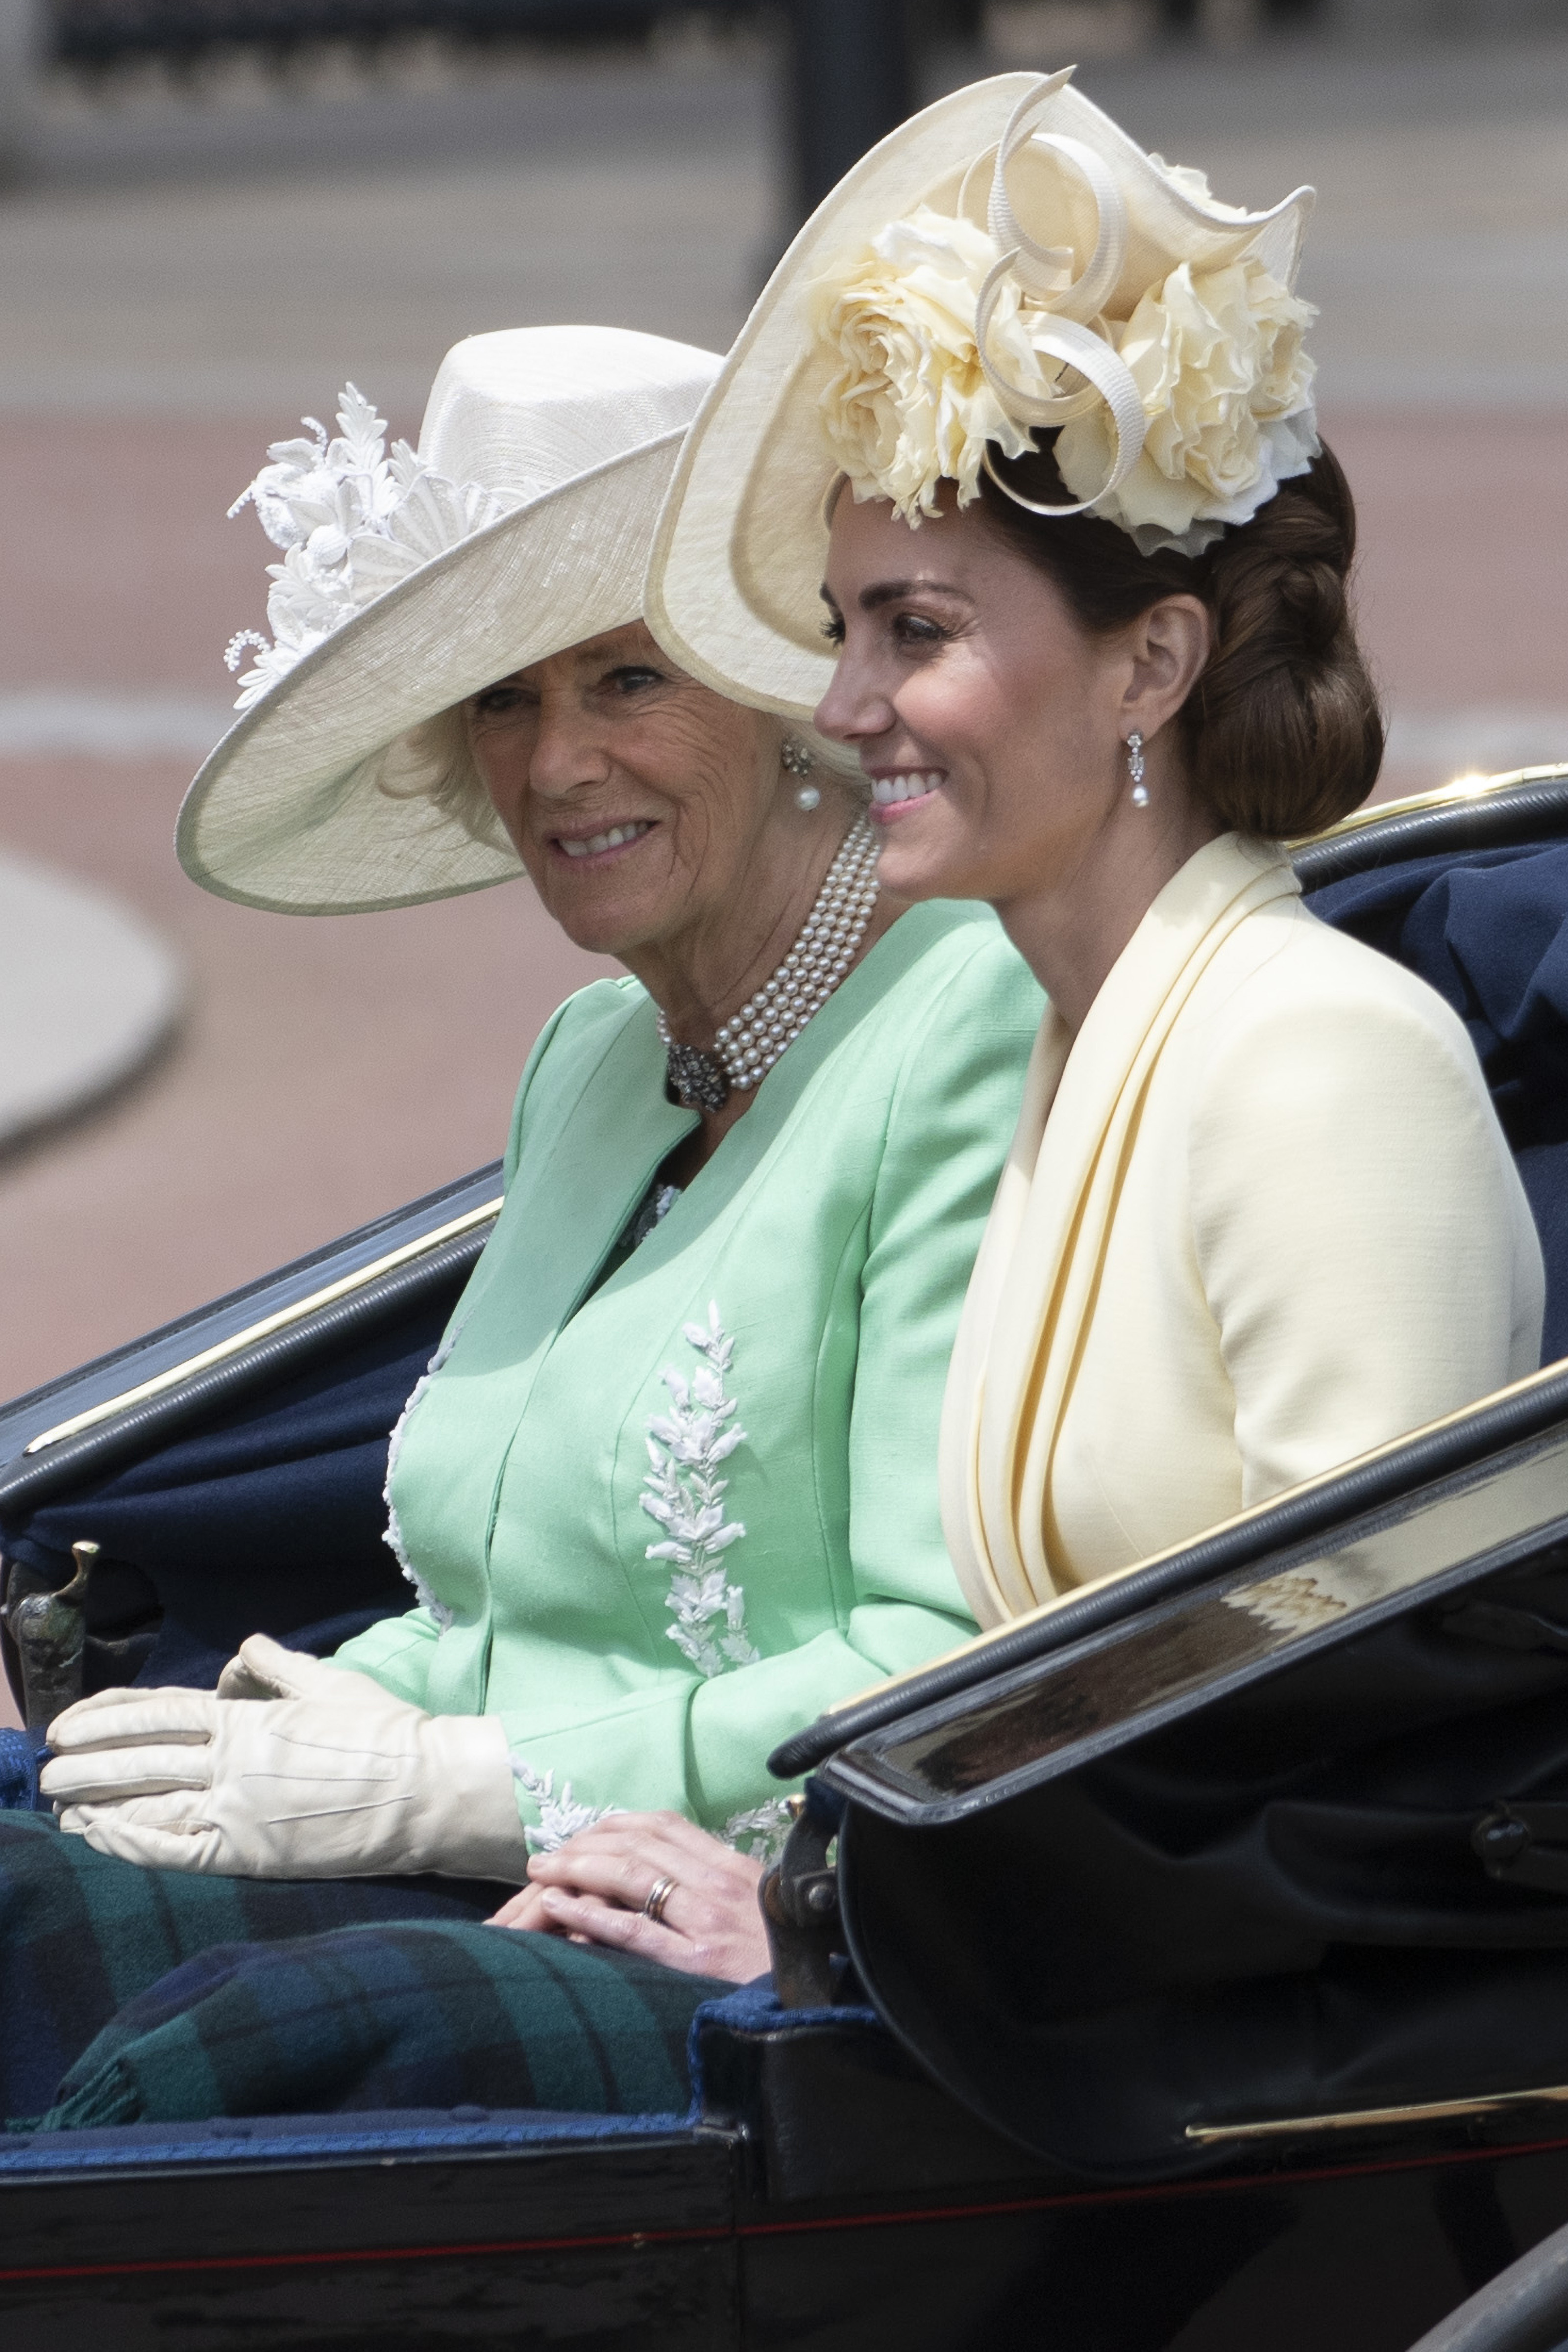 6月8日,在英国伦敦,英国王储查尔斯的妻子卡米拉(左)与凯特王妃乘马车